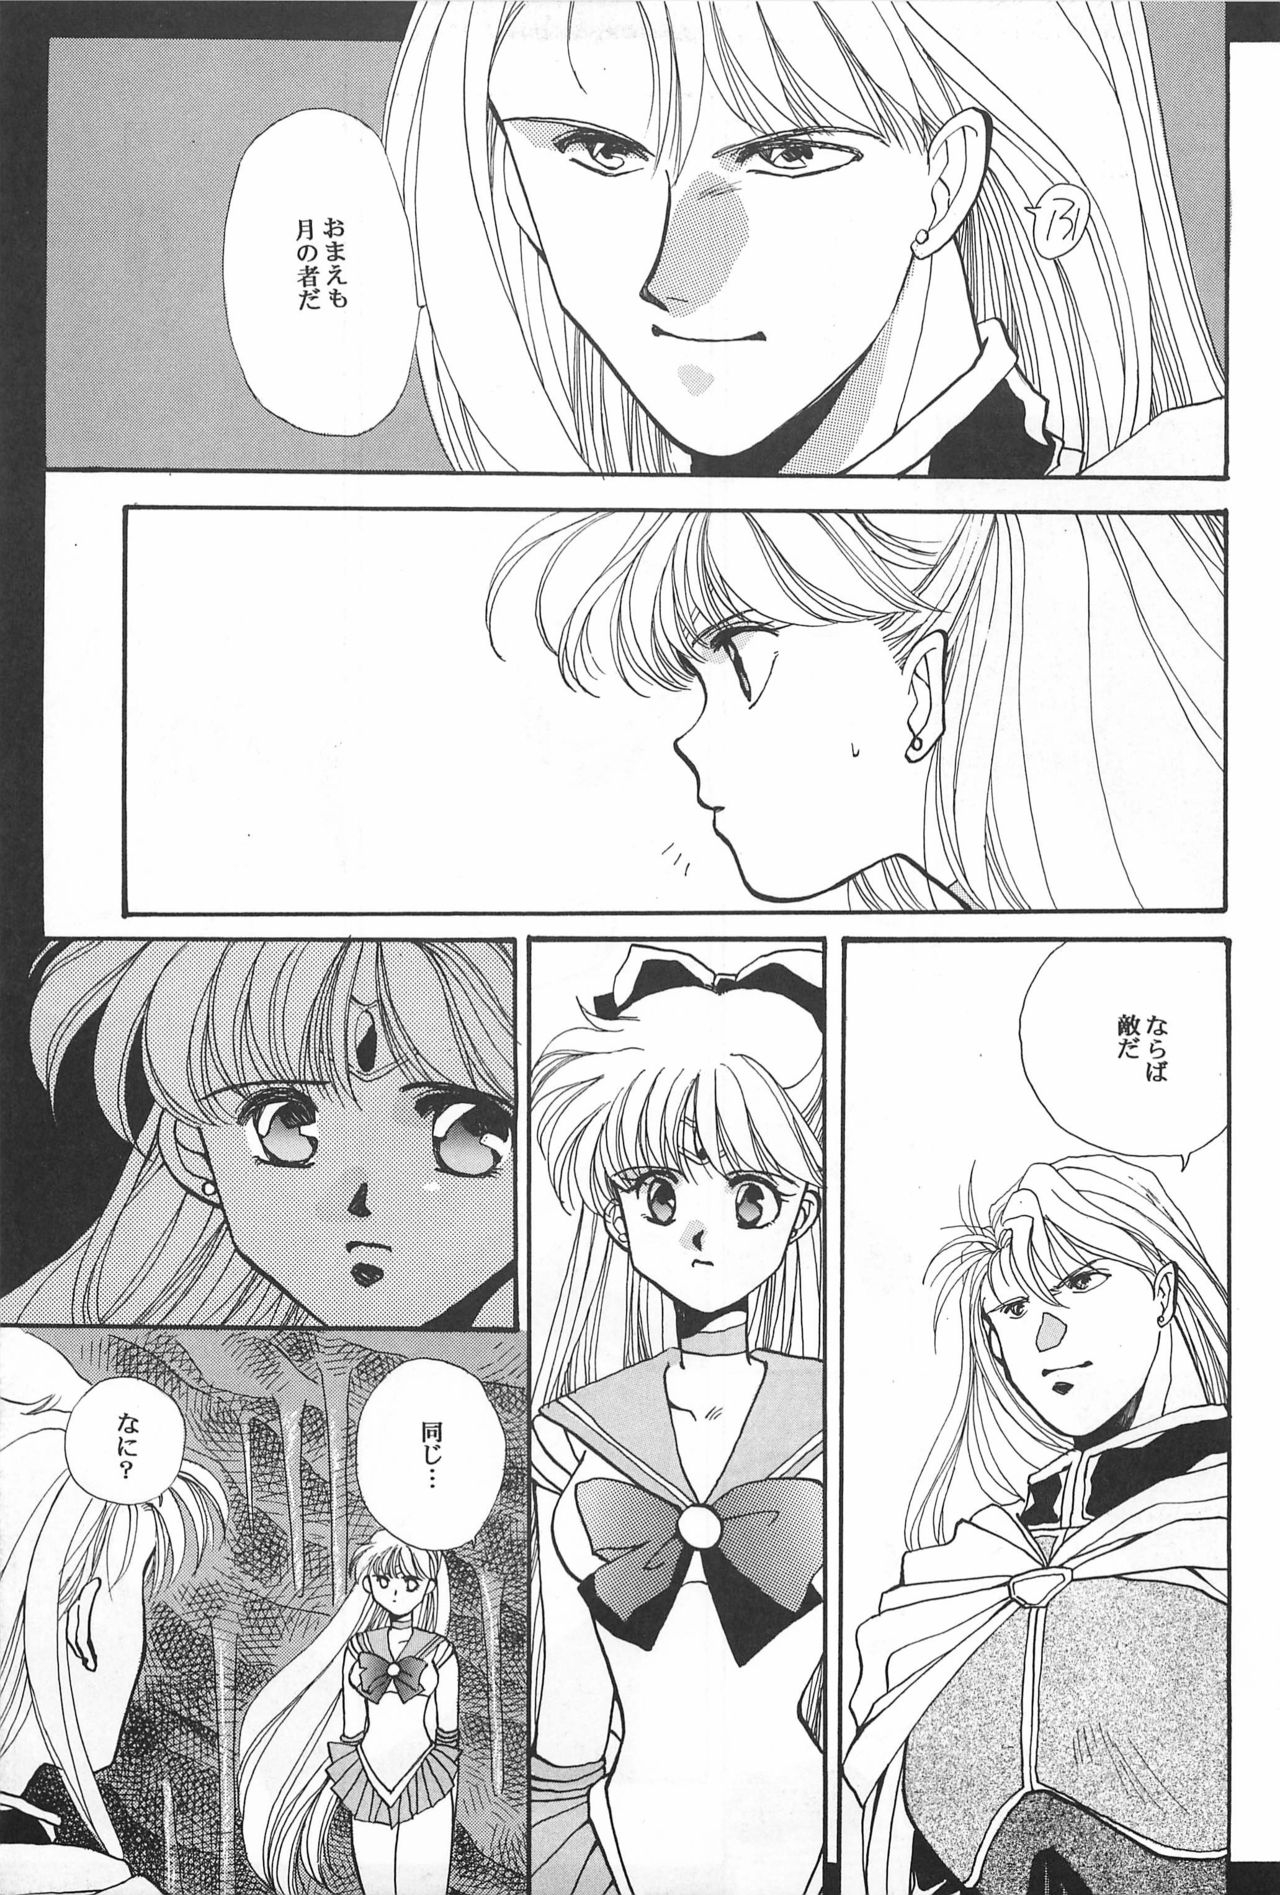 [Hello World (Muttri Moony)] Kaze no You ni Yume no You ni - Sailor Moon Collection (Sailor Moon) 44